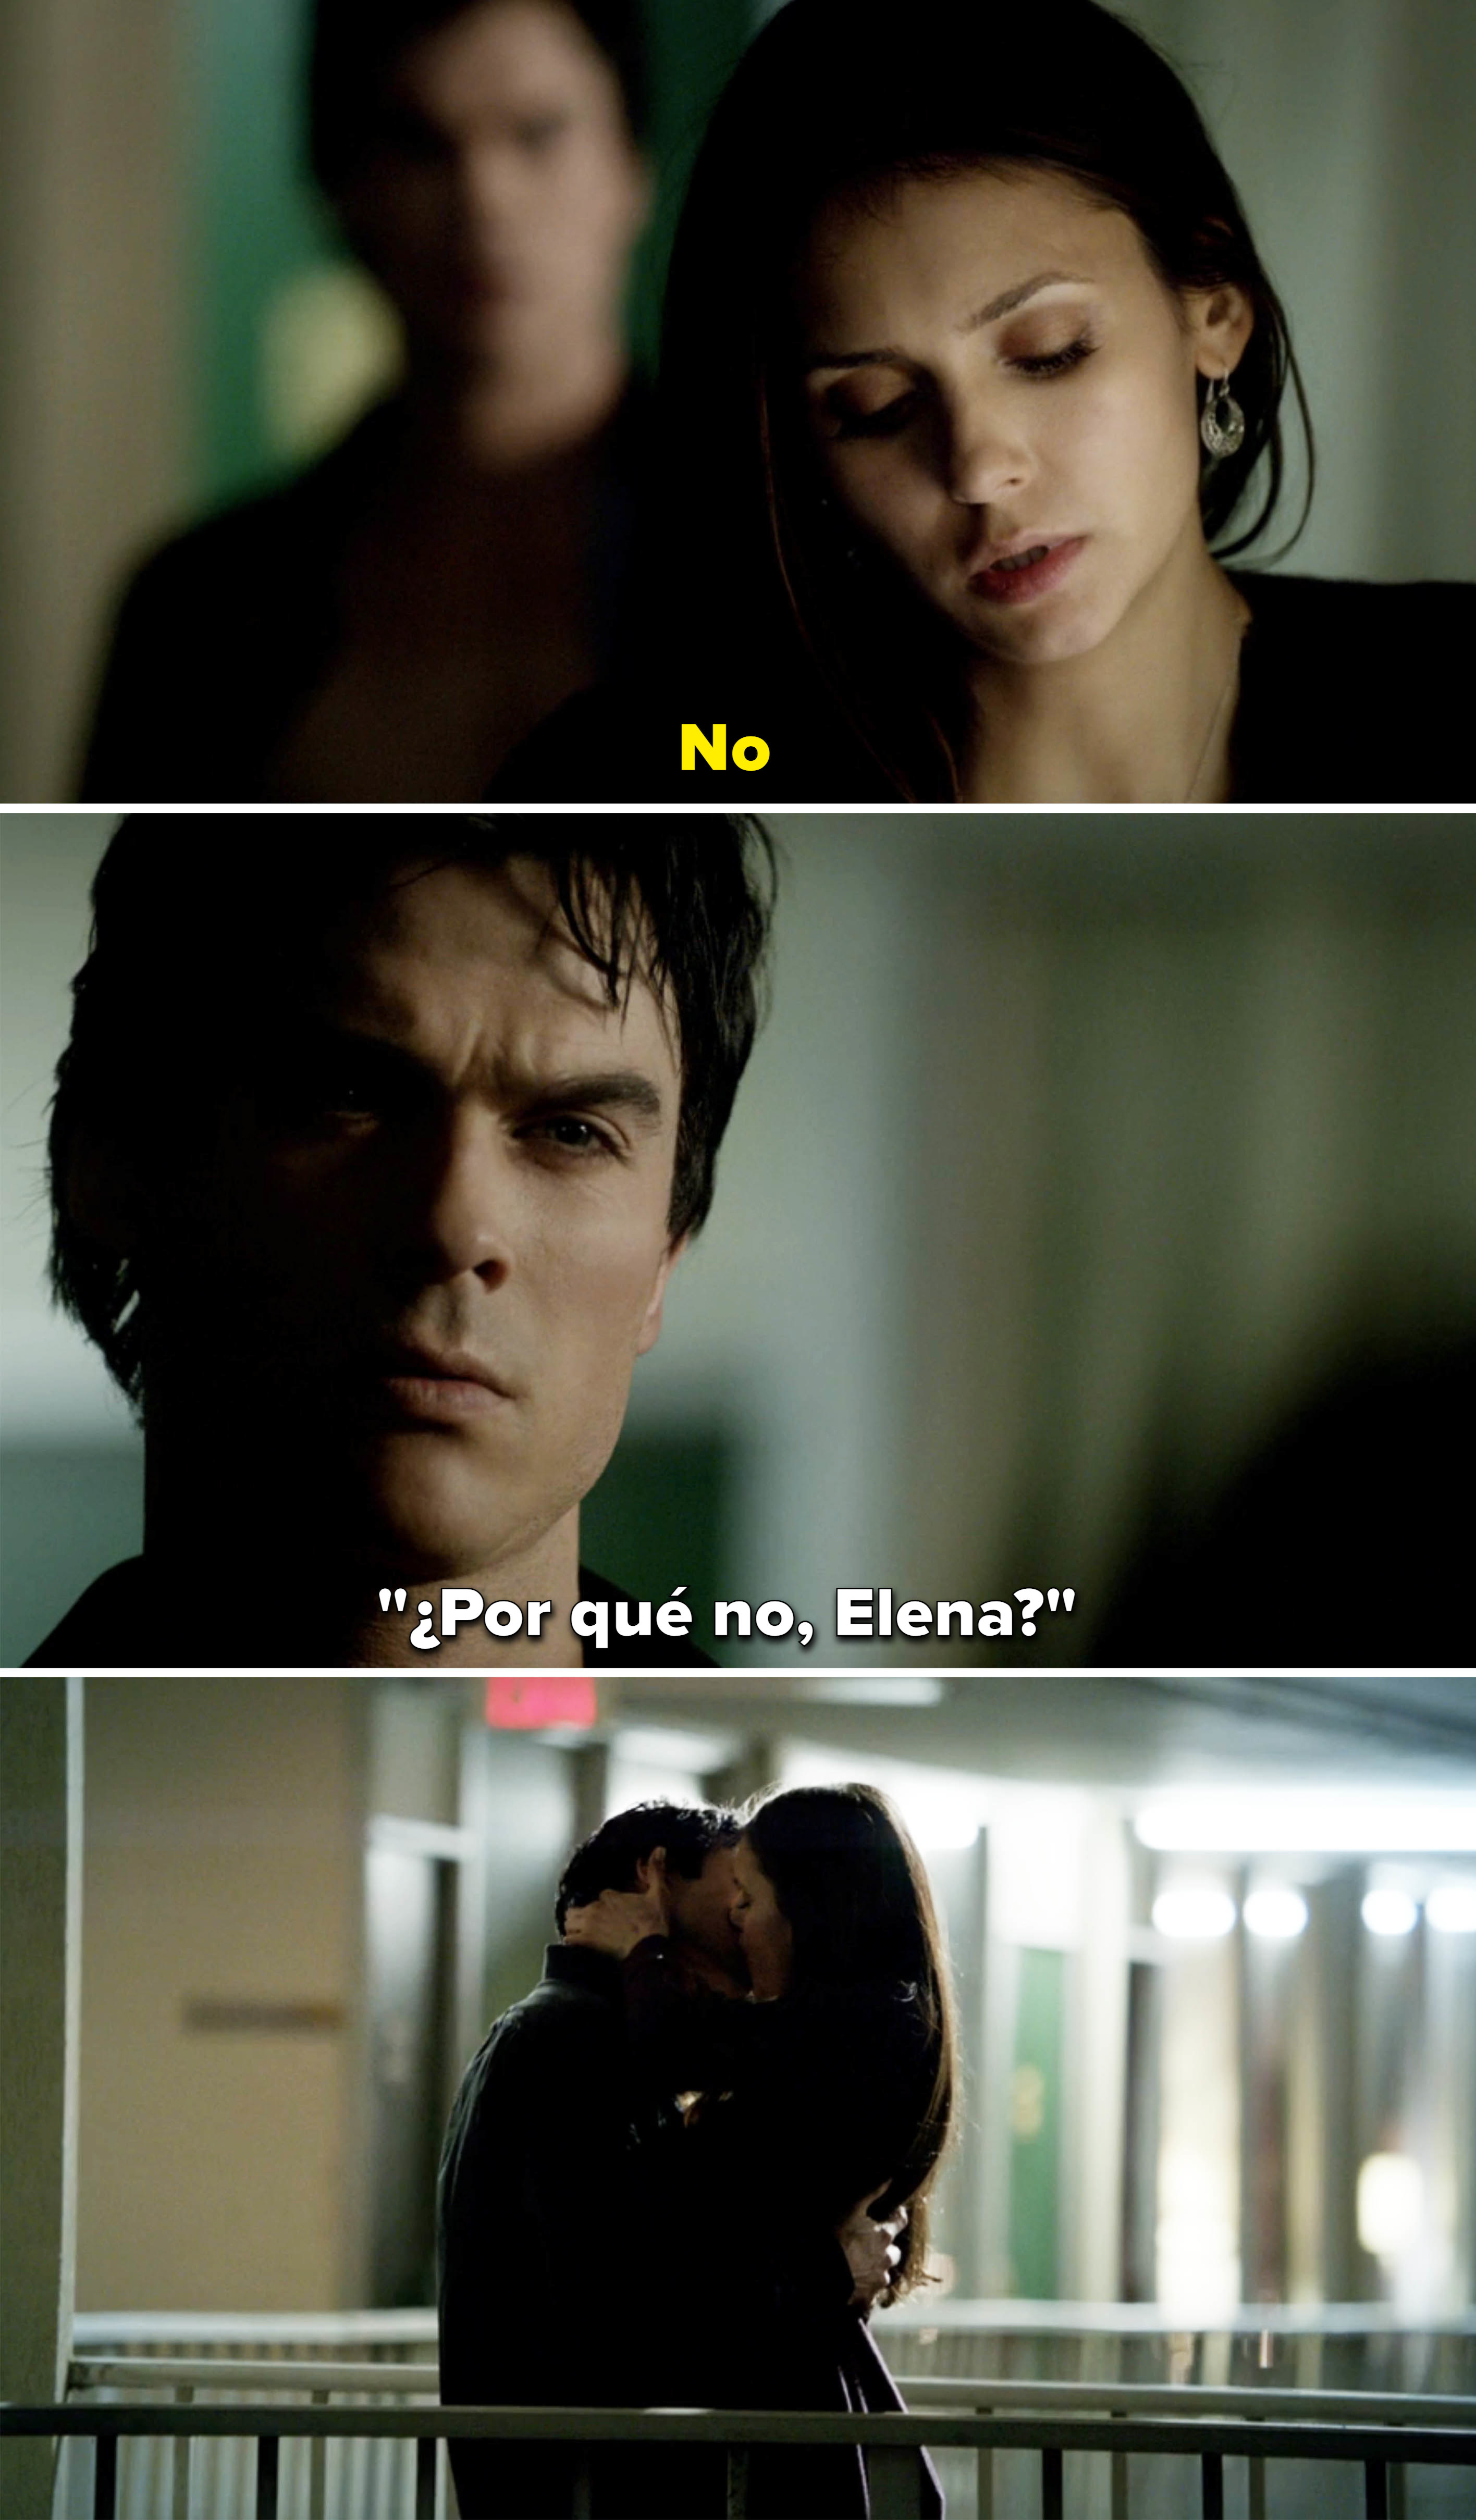 &quot;Why not, Elena?&quot;